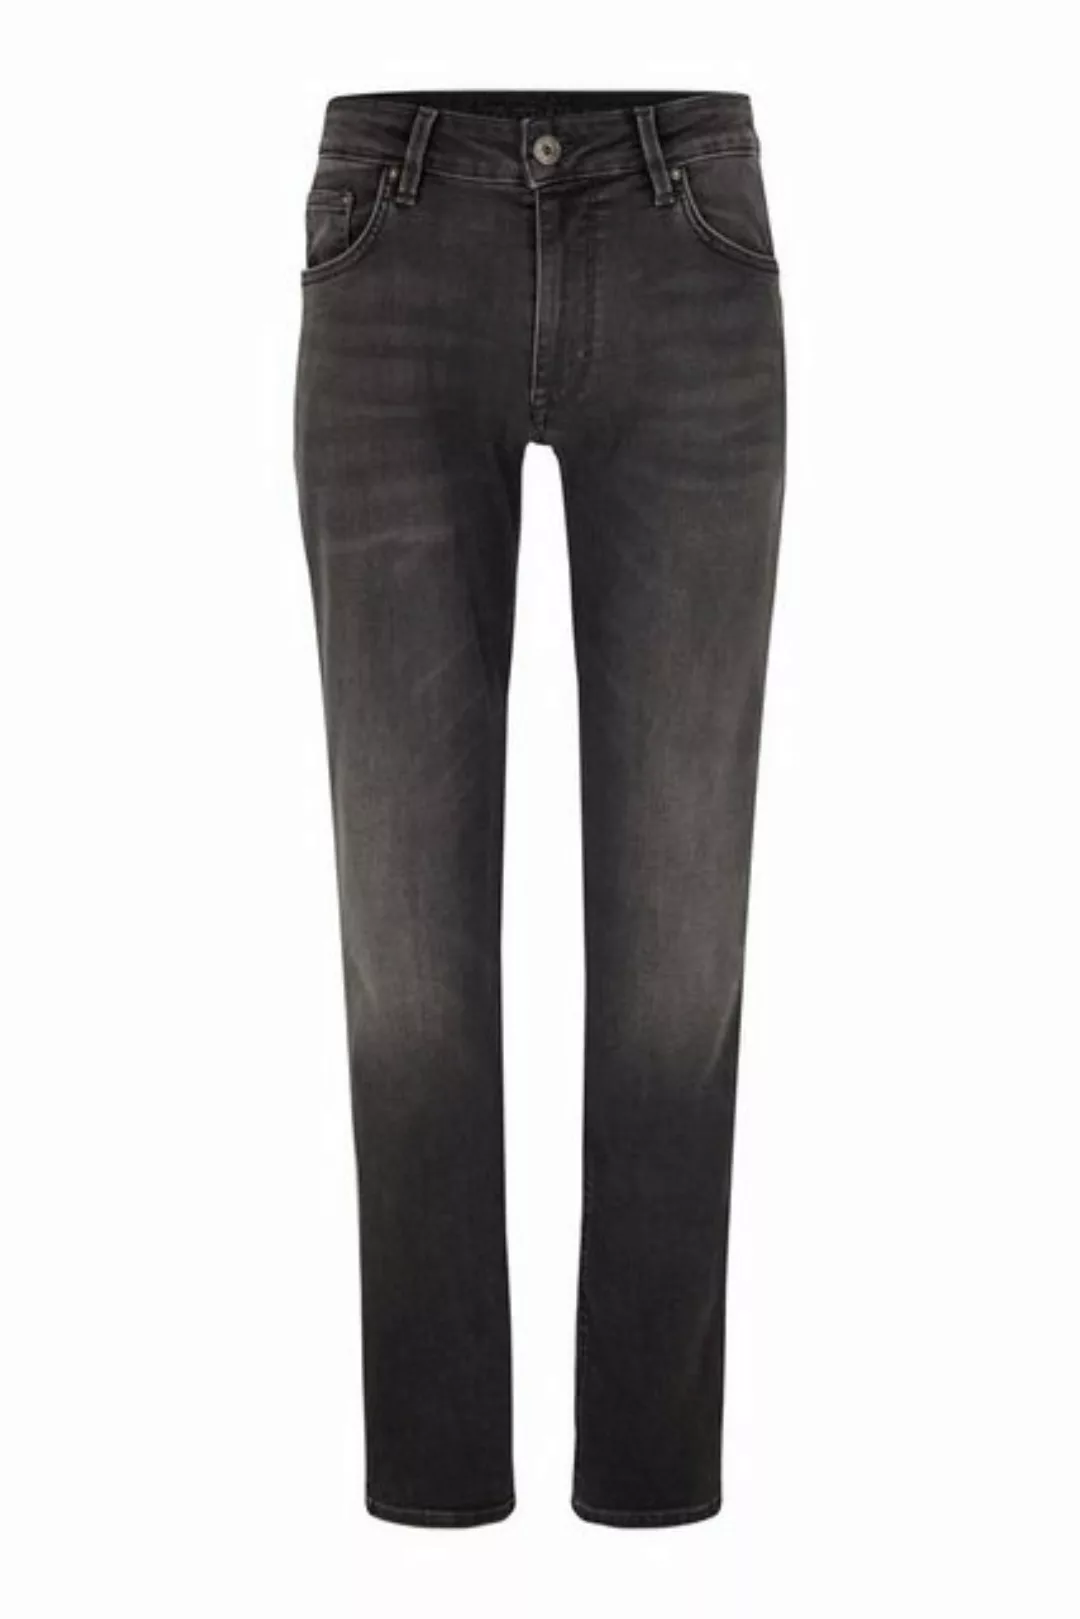 Joop! Herren Jeans Mitch - Modern Fit - Blau - Light Blue Denim günstig online kaufen